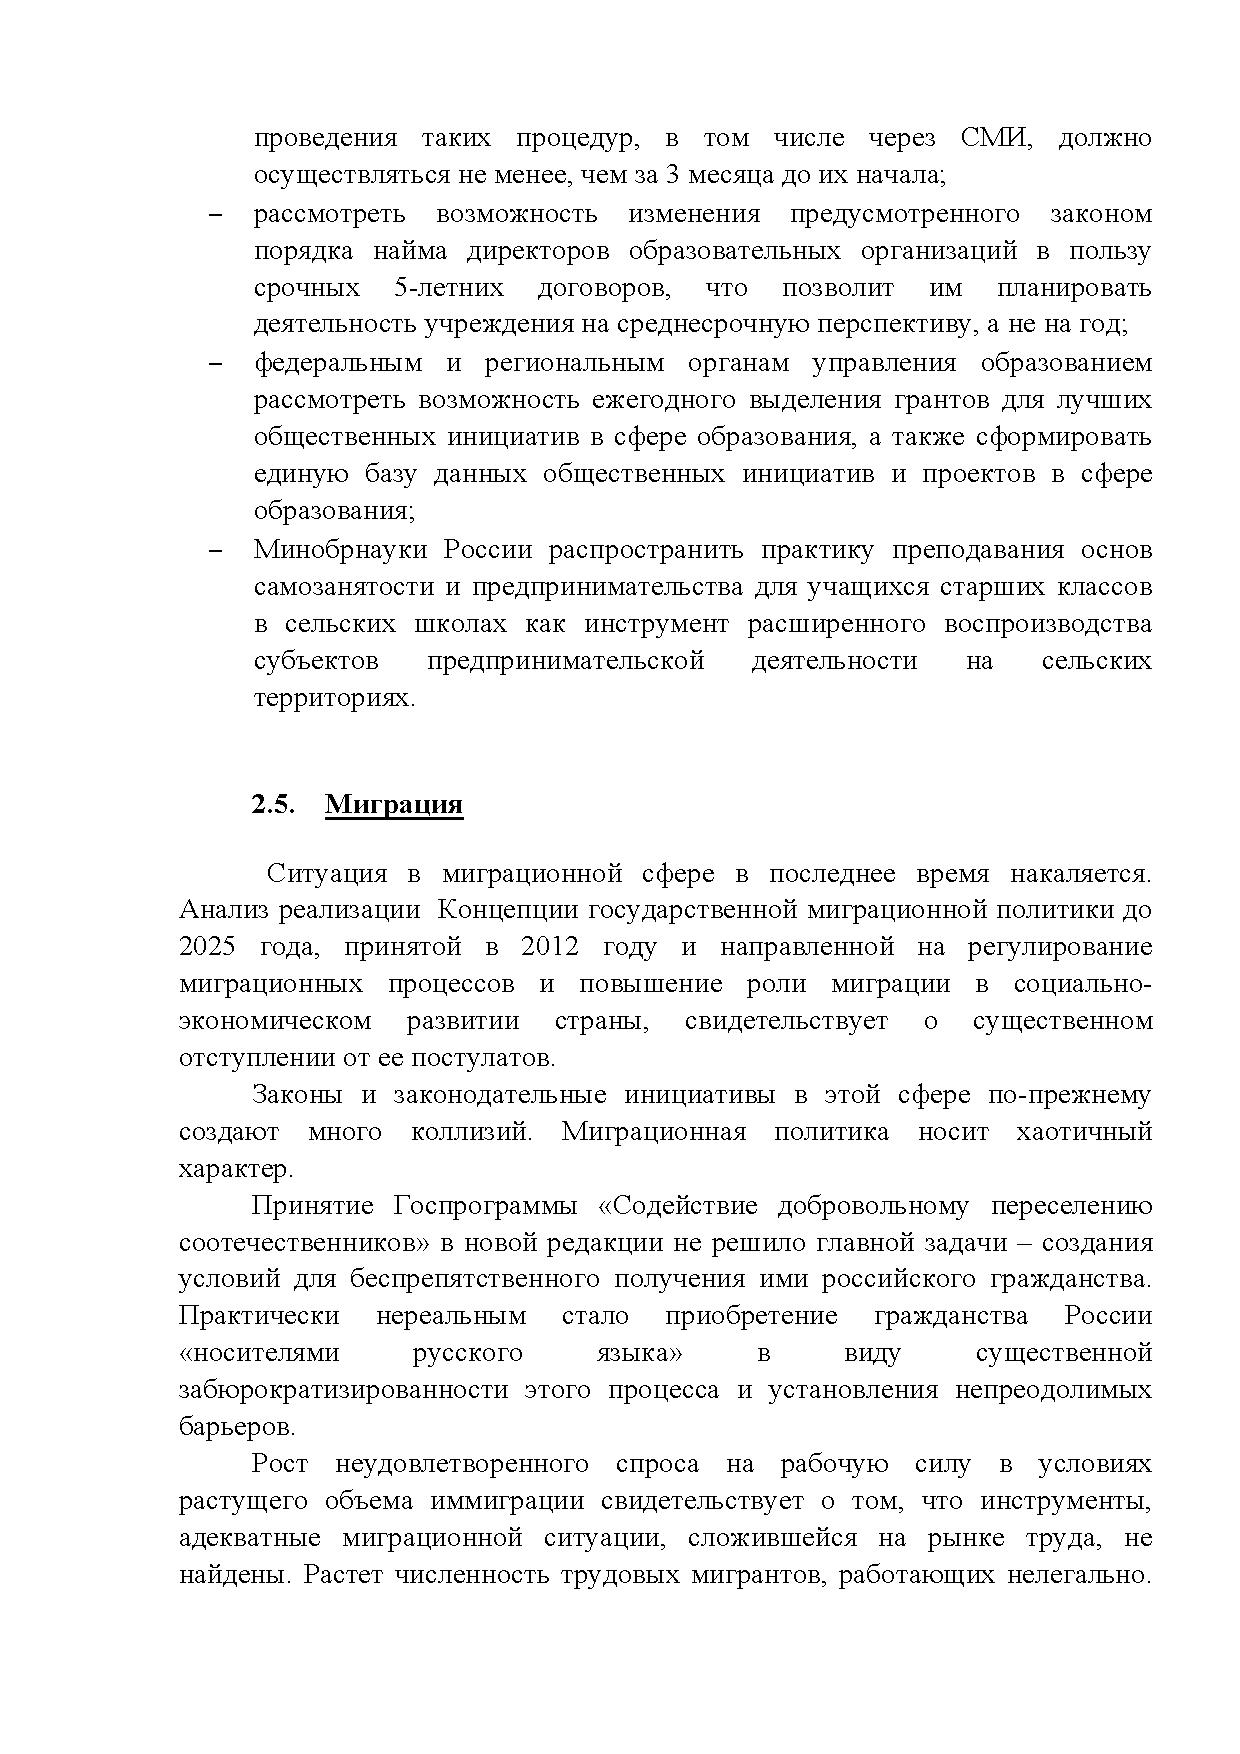  Опубликованы Предложения Общероссийского гражданского форума 2015 - фото 33